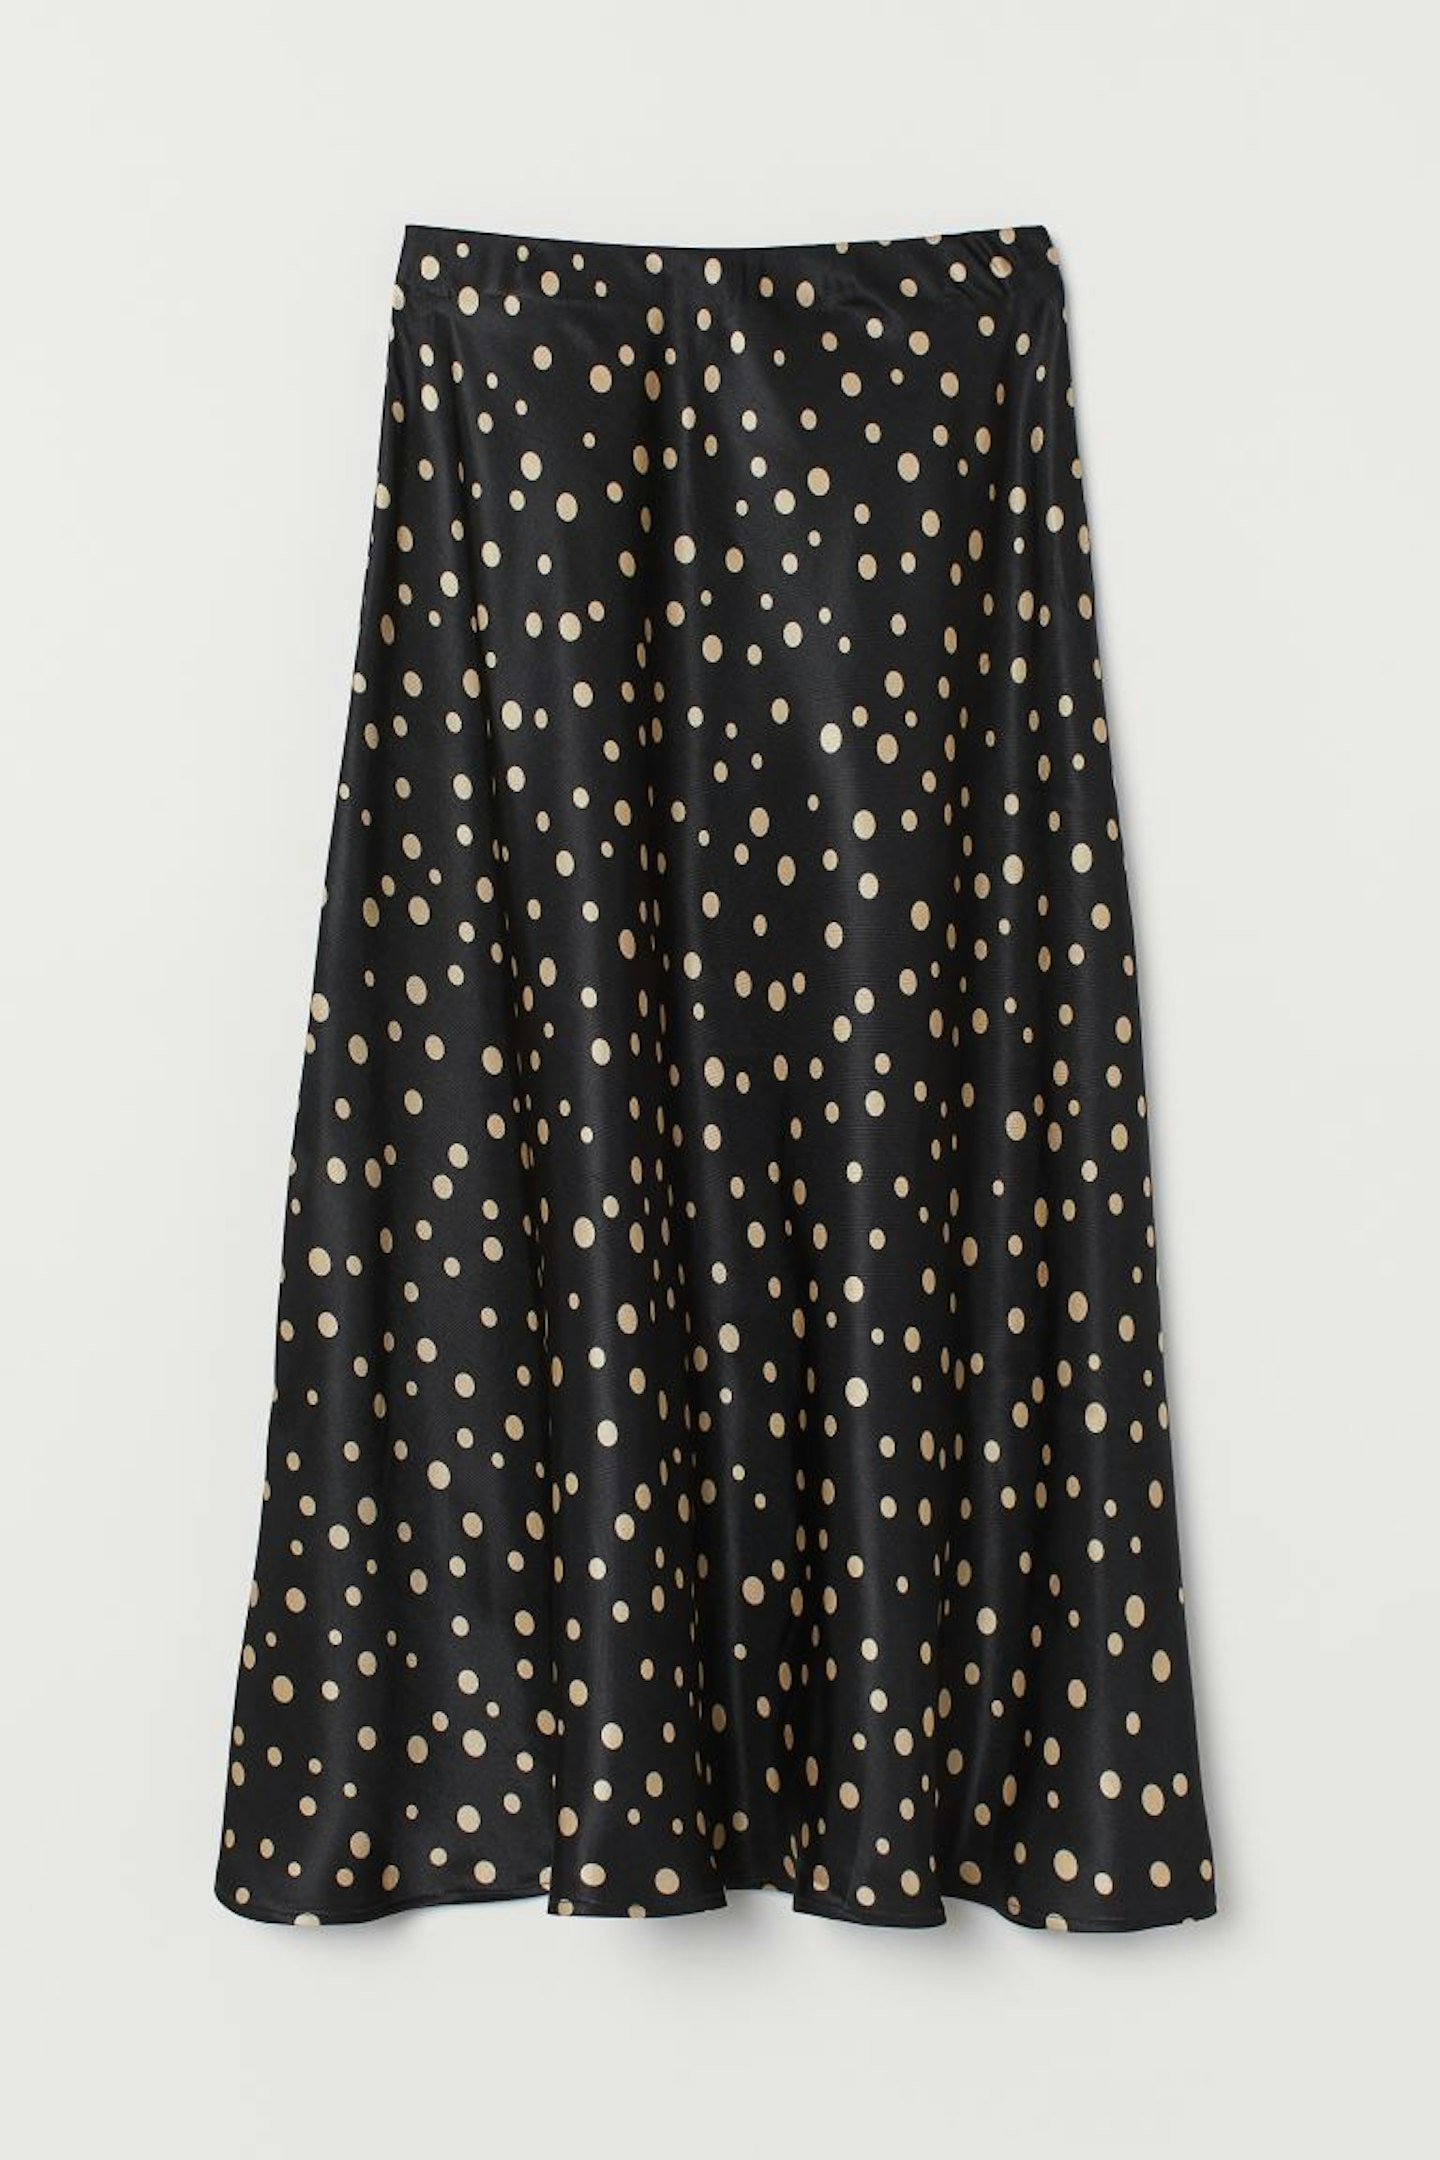 H&M, Patterned Skirt, £24.99